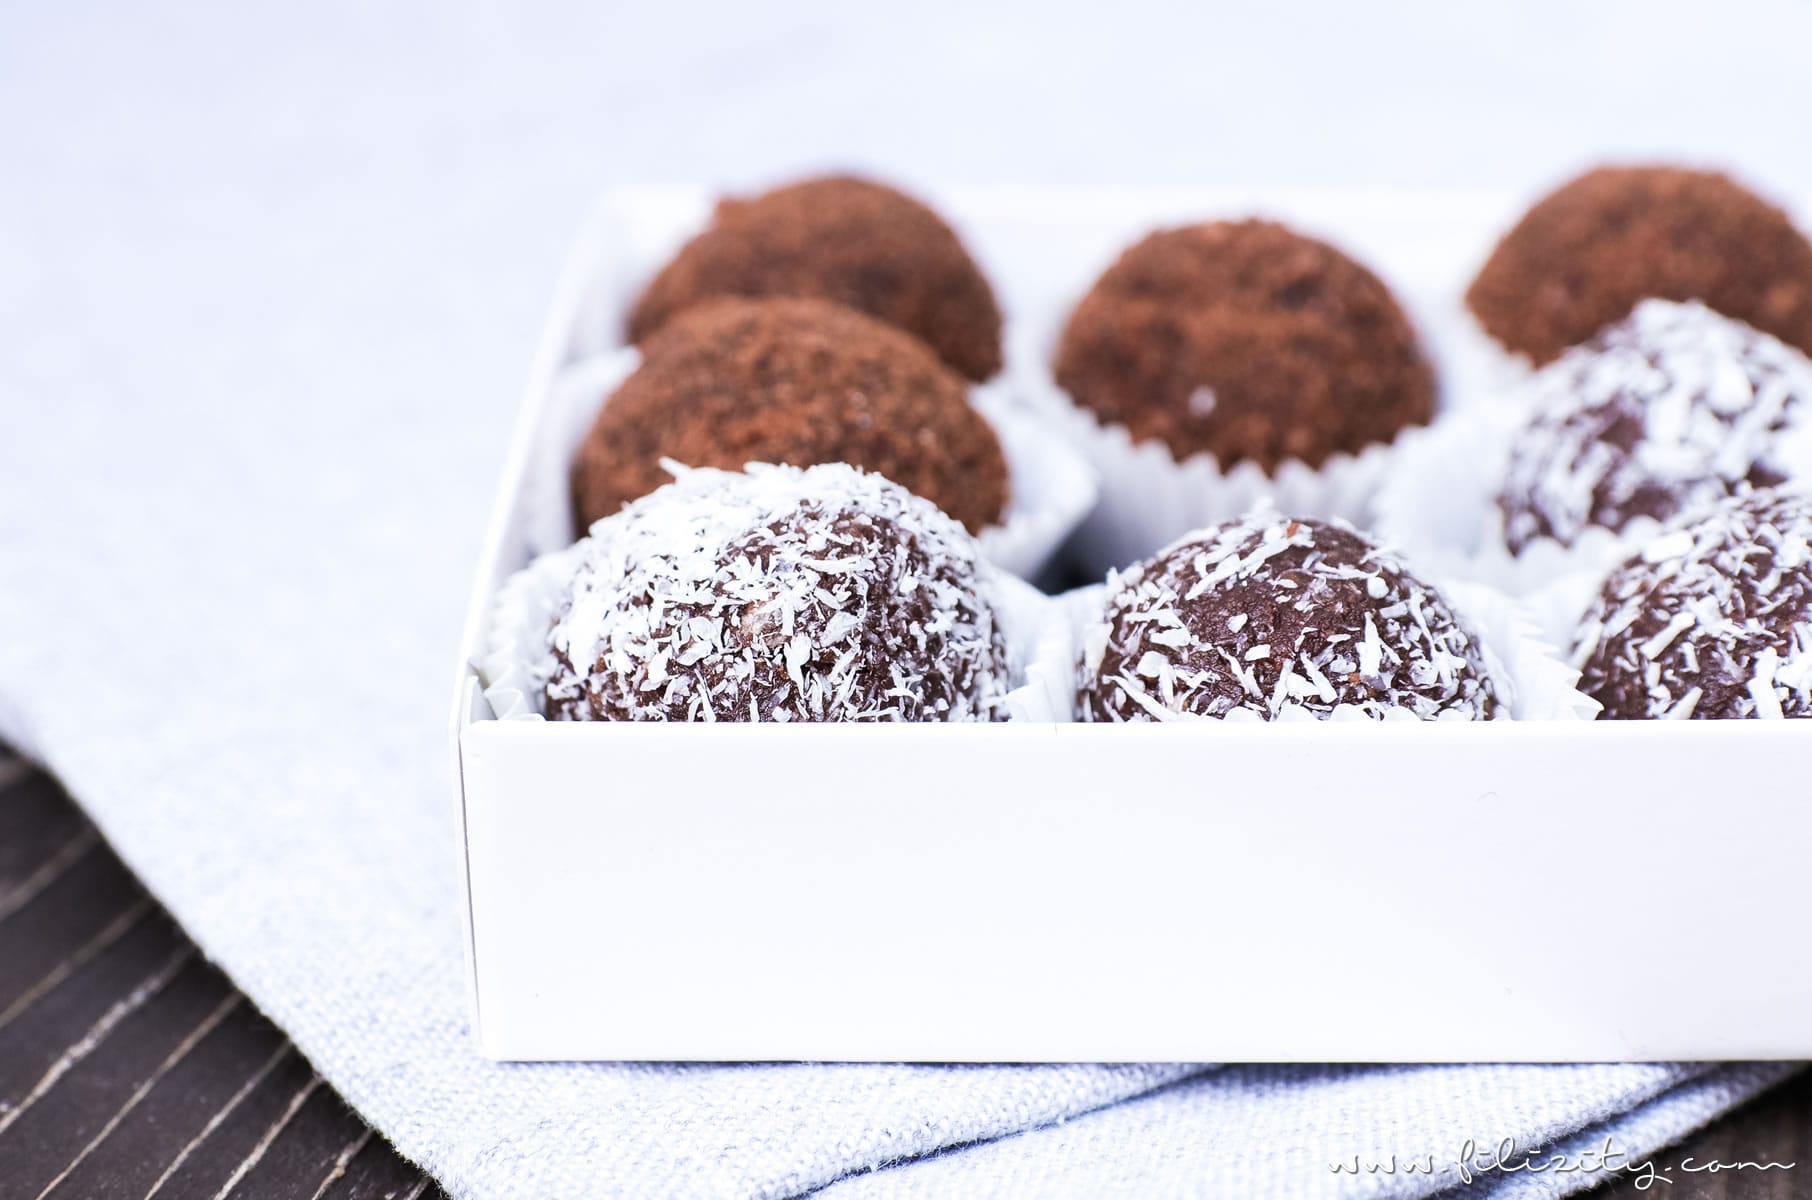 5-Minuten-Pralinen: Rezept für Nutella-Butterkeks-Trüffel mit Kokos | Geschenke aus der Küche | Filizity.com | Food-Blog aus dem Rheinland #nutella #schokolade #pralinen